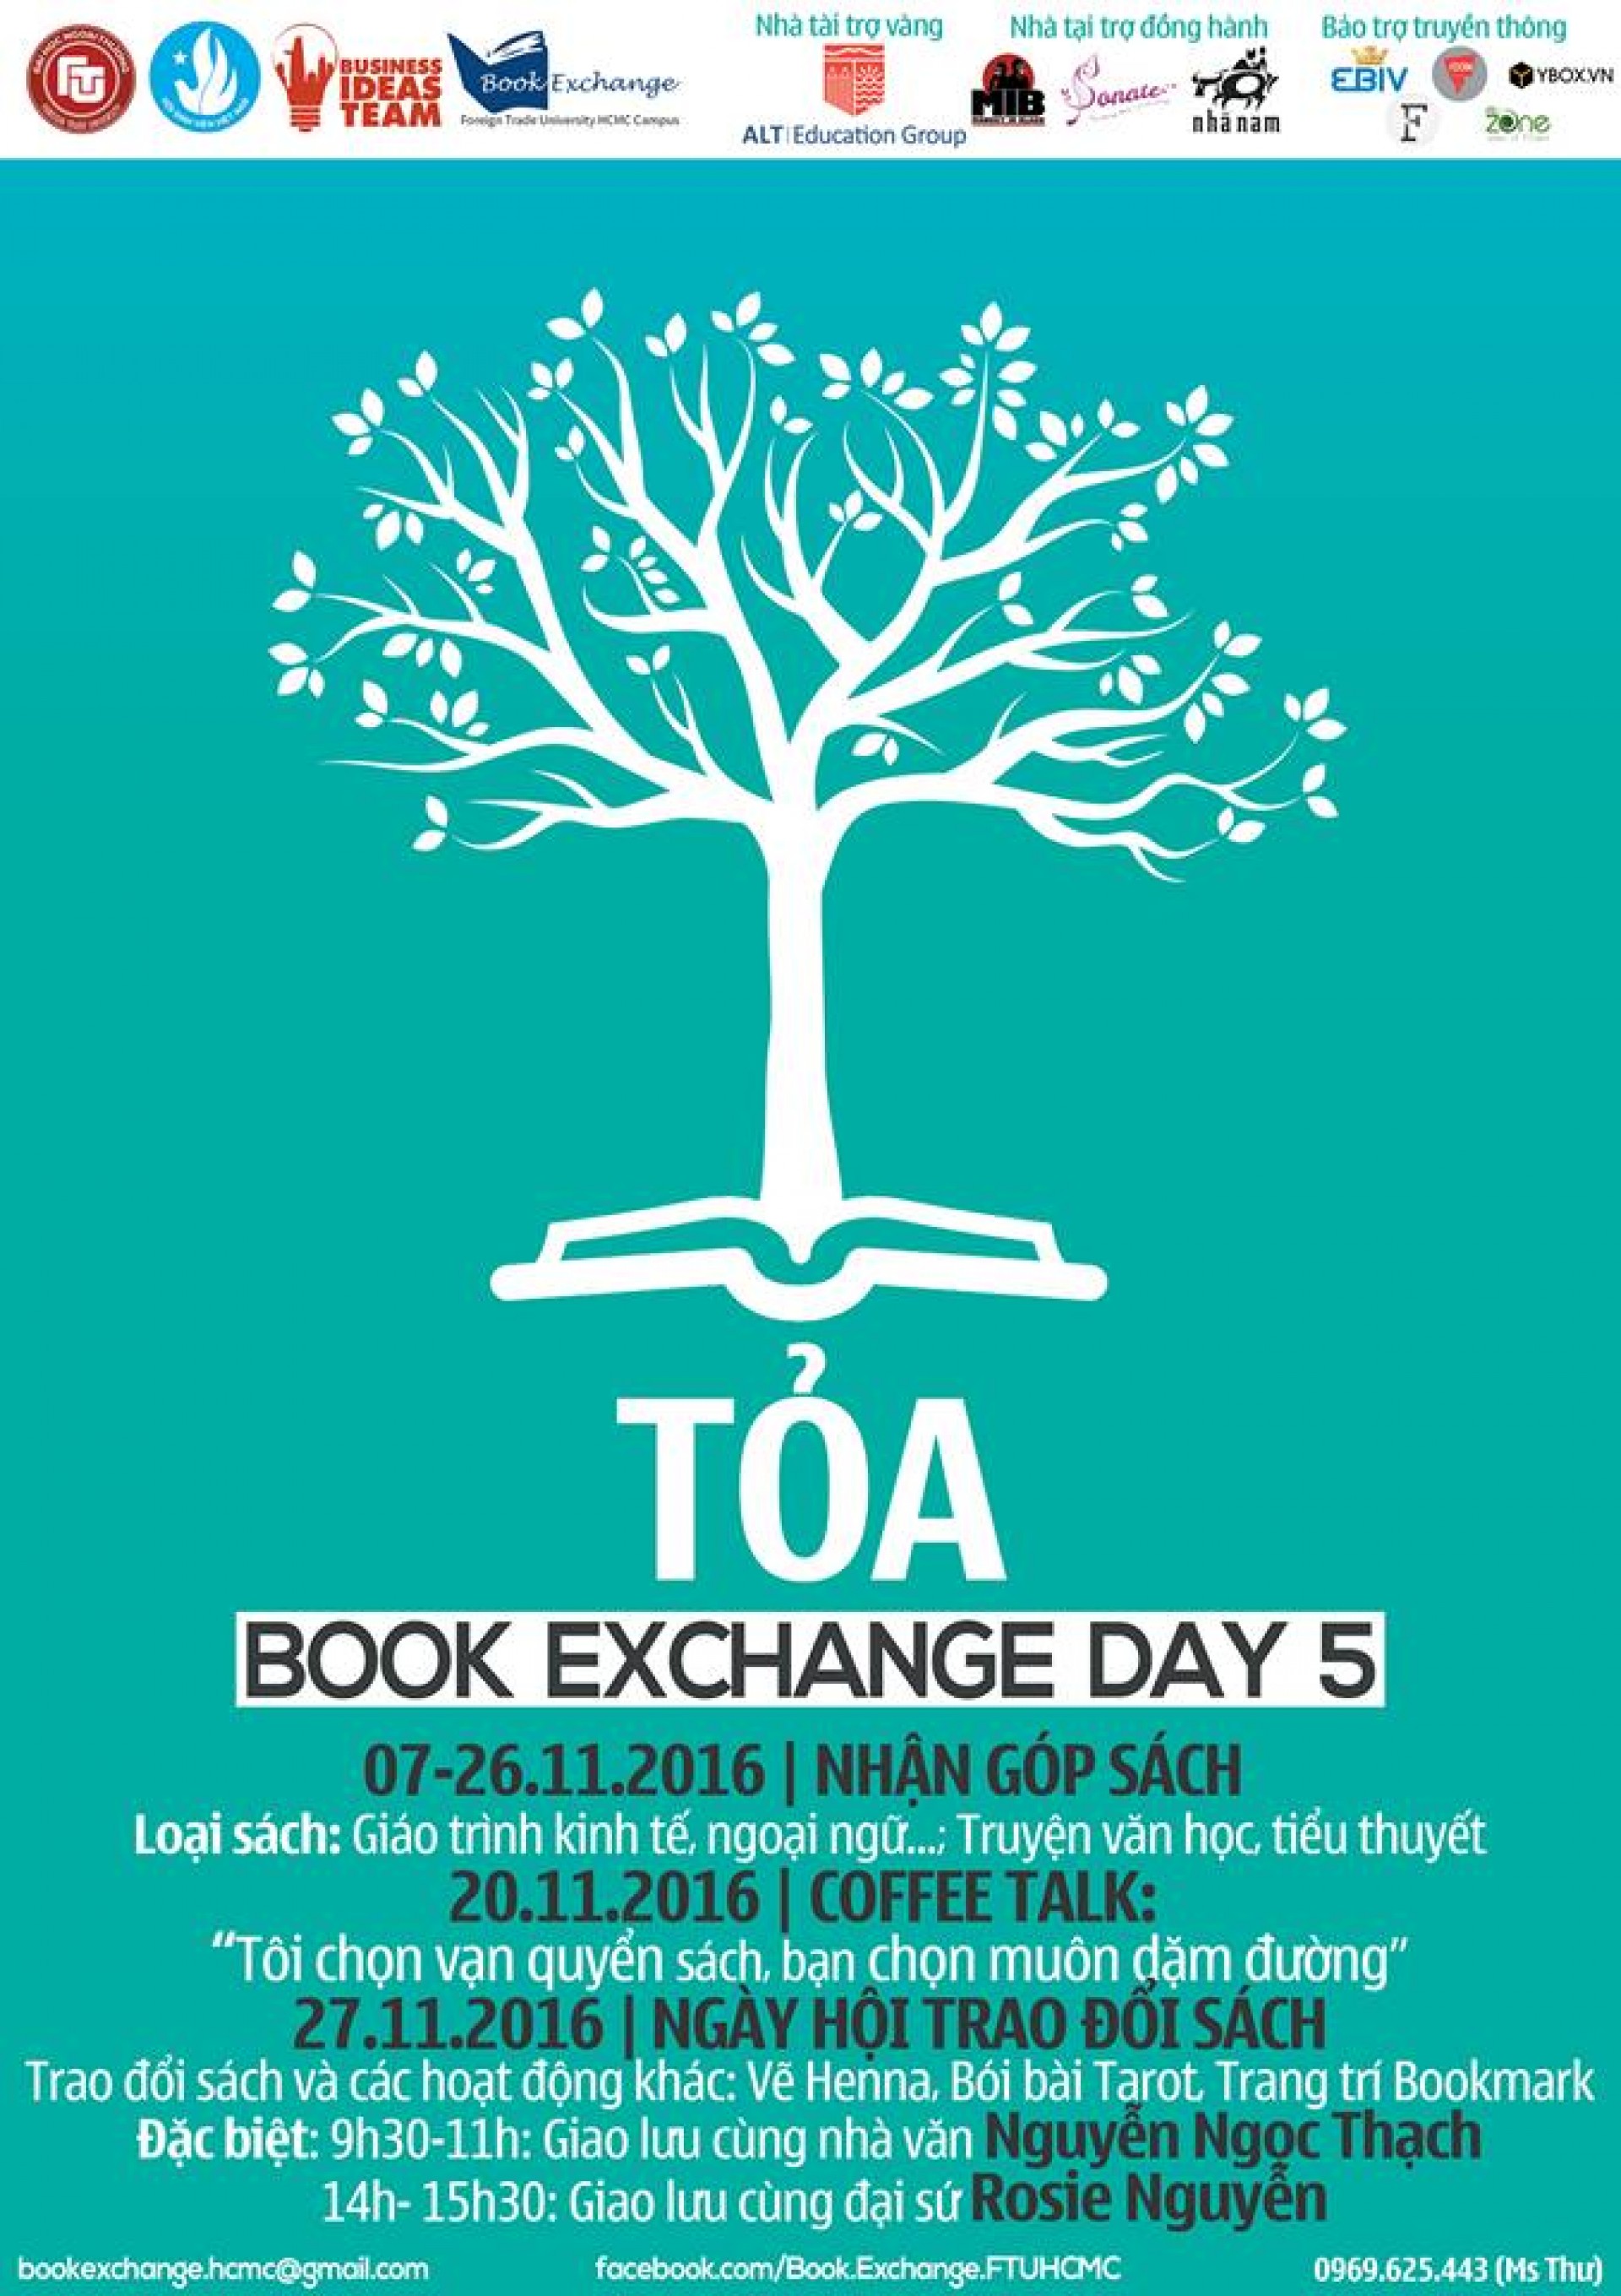 Chương trình Trao đổi sách Book Exchange